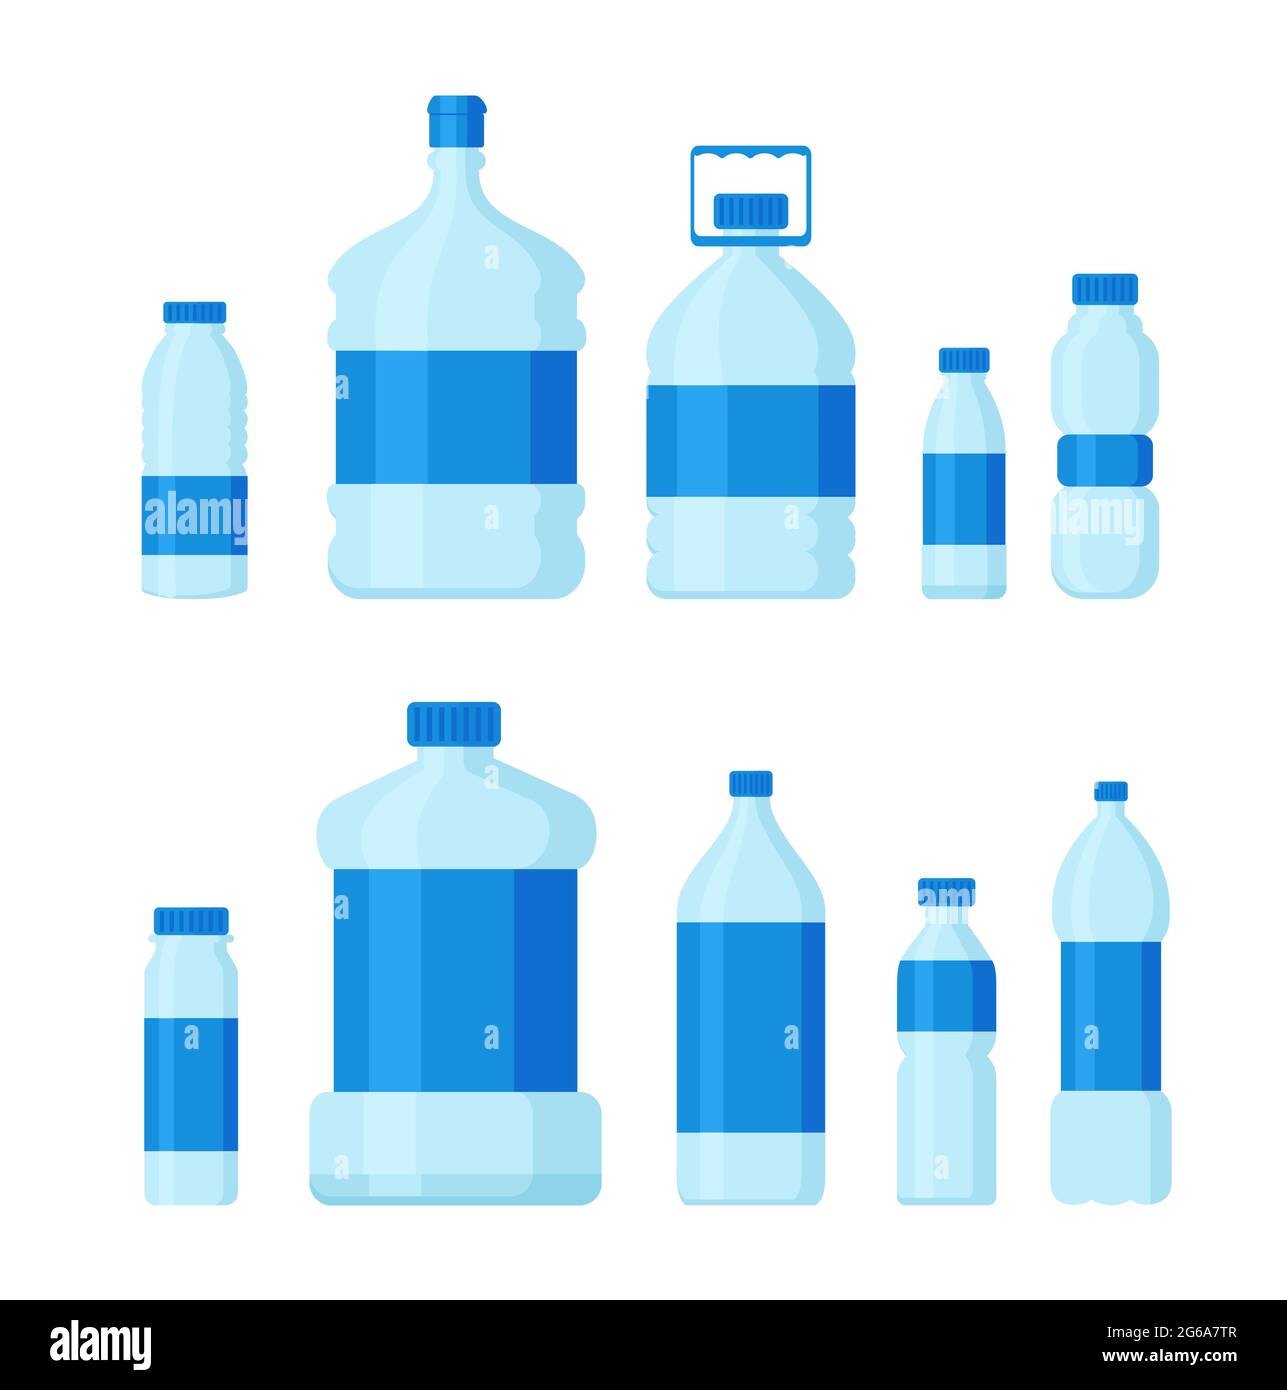 Illustrazione vettoriale Set di bottiglie in plastica, contenitori vuoti per liquidi e acqua potabile in stile cartoon piano, isolati su sfondo bianco. Illustrazione Vettoriale